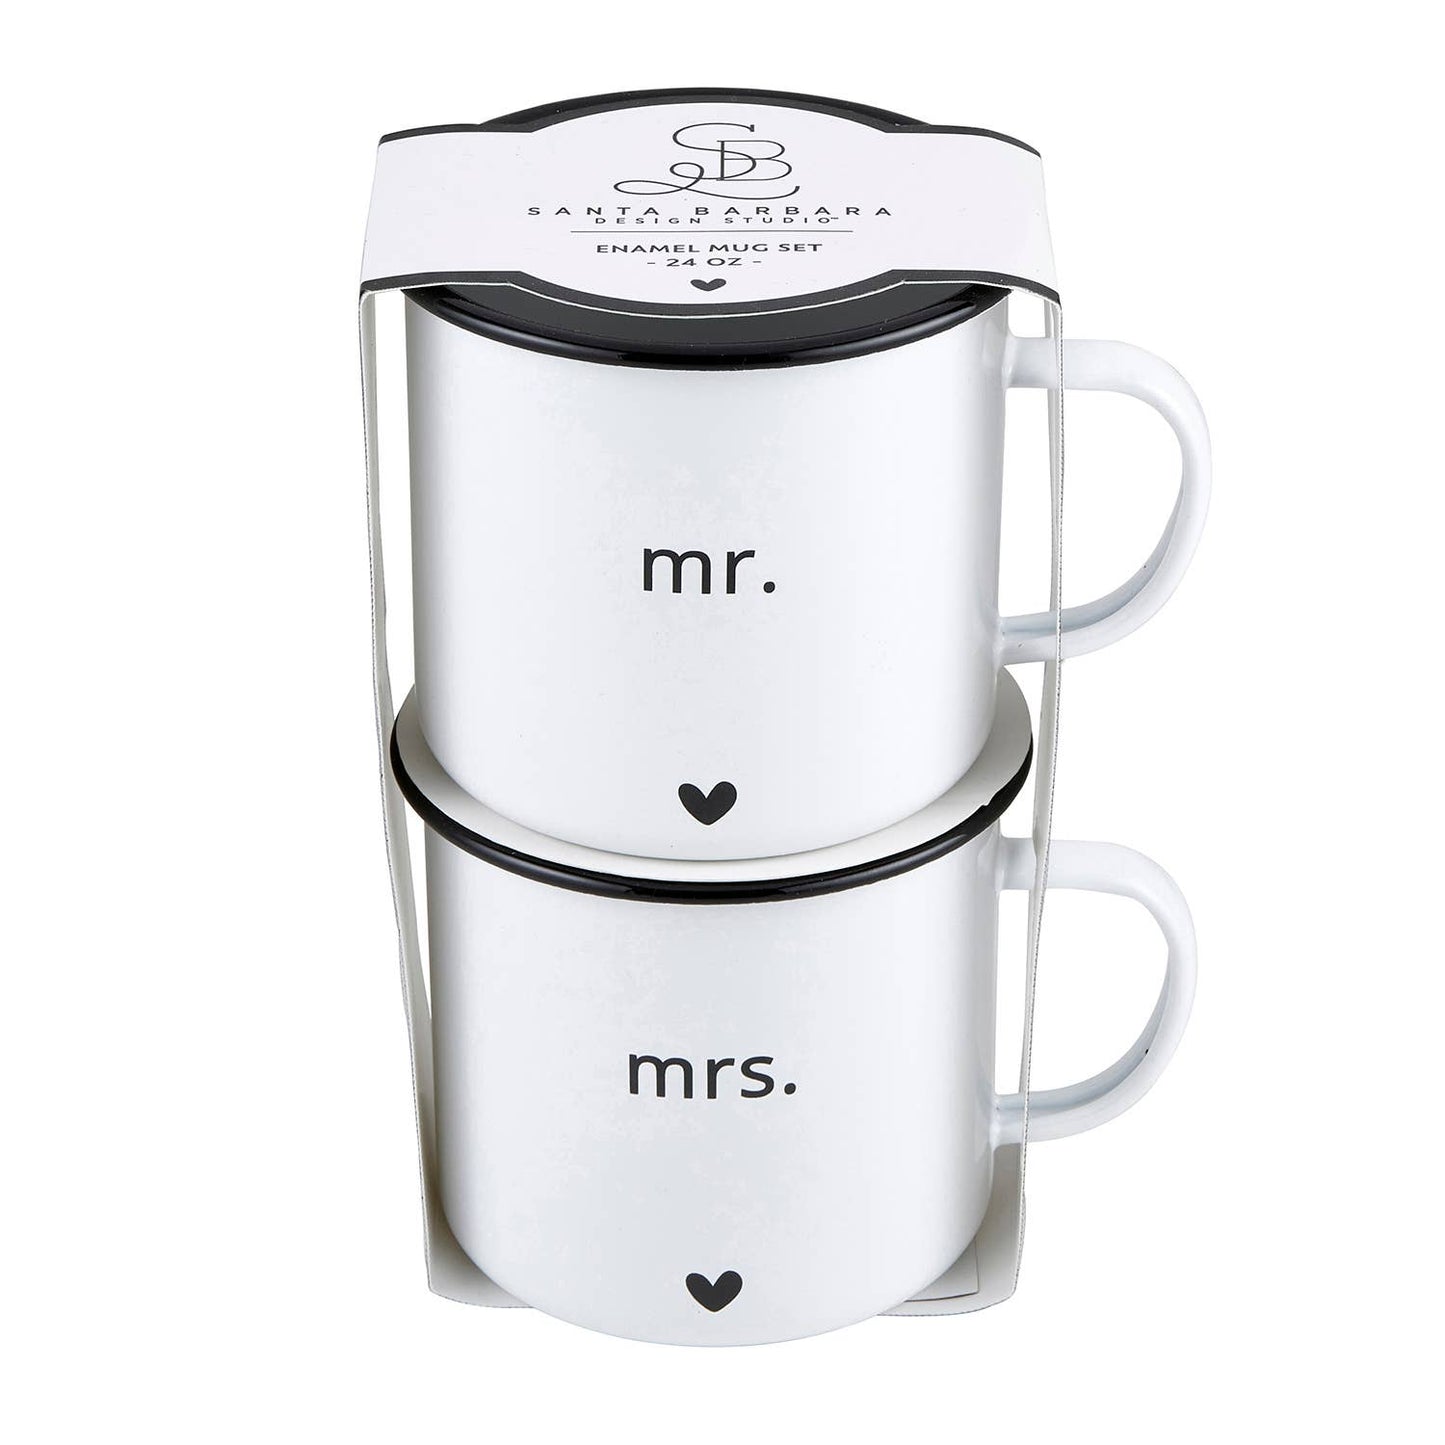 Enamel Mug Set - Mr and Mrs